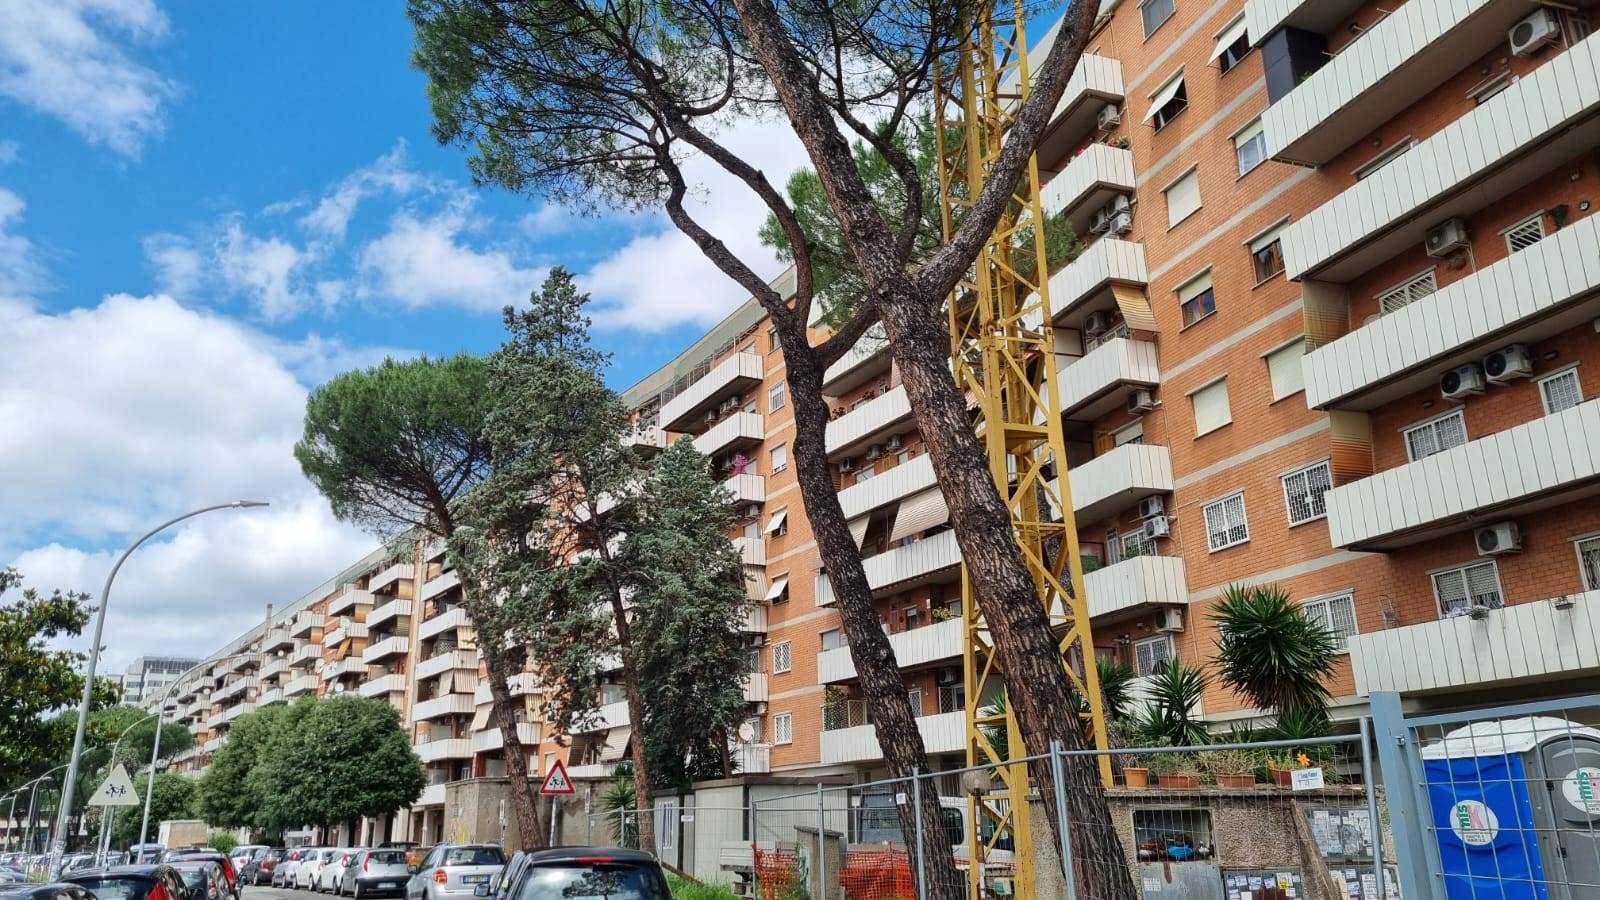 CINECITTÀ, ROMA, Wohnung zu verkaufen von 100 Qm, Gutem, Heizung Unabhaengig, Energie-klasse: G, Epi: 175 kwh/m2 jahr, am boden 4° auf 7, 